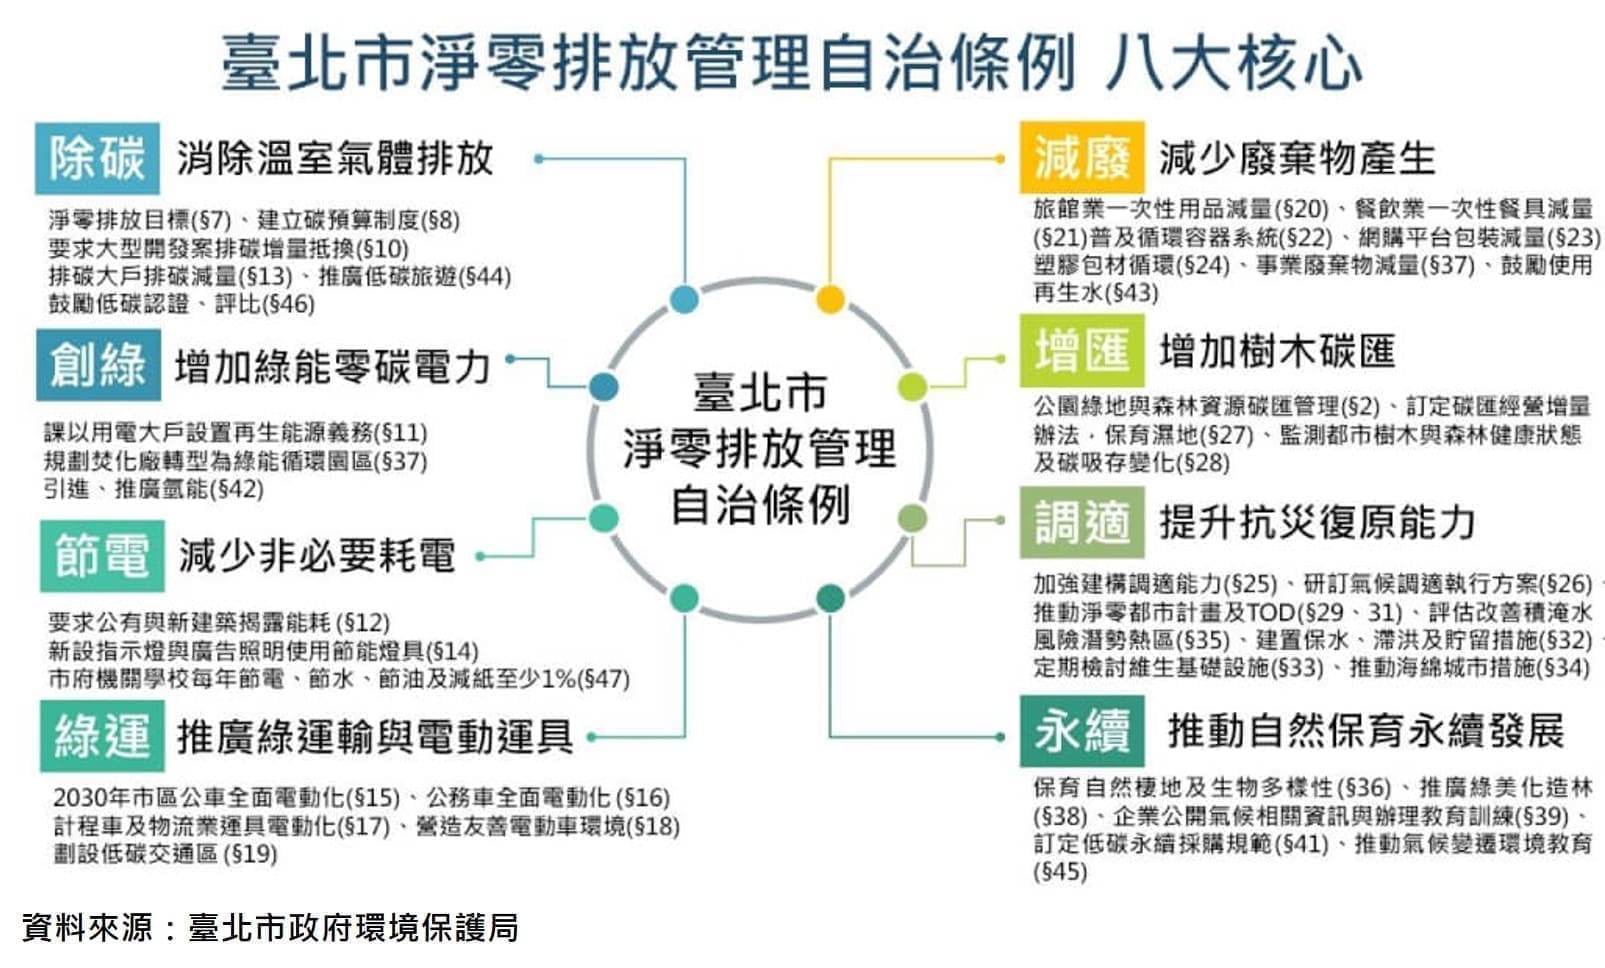 臺北市淨零排放管裡自治條例八大核心